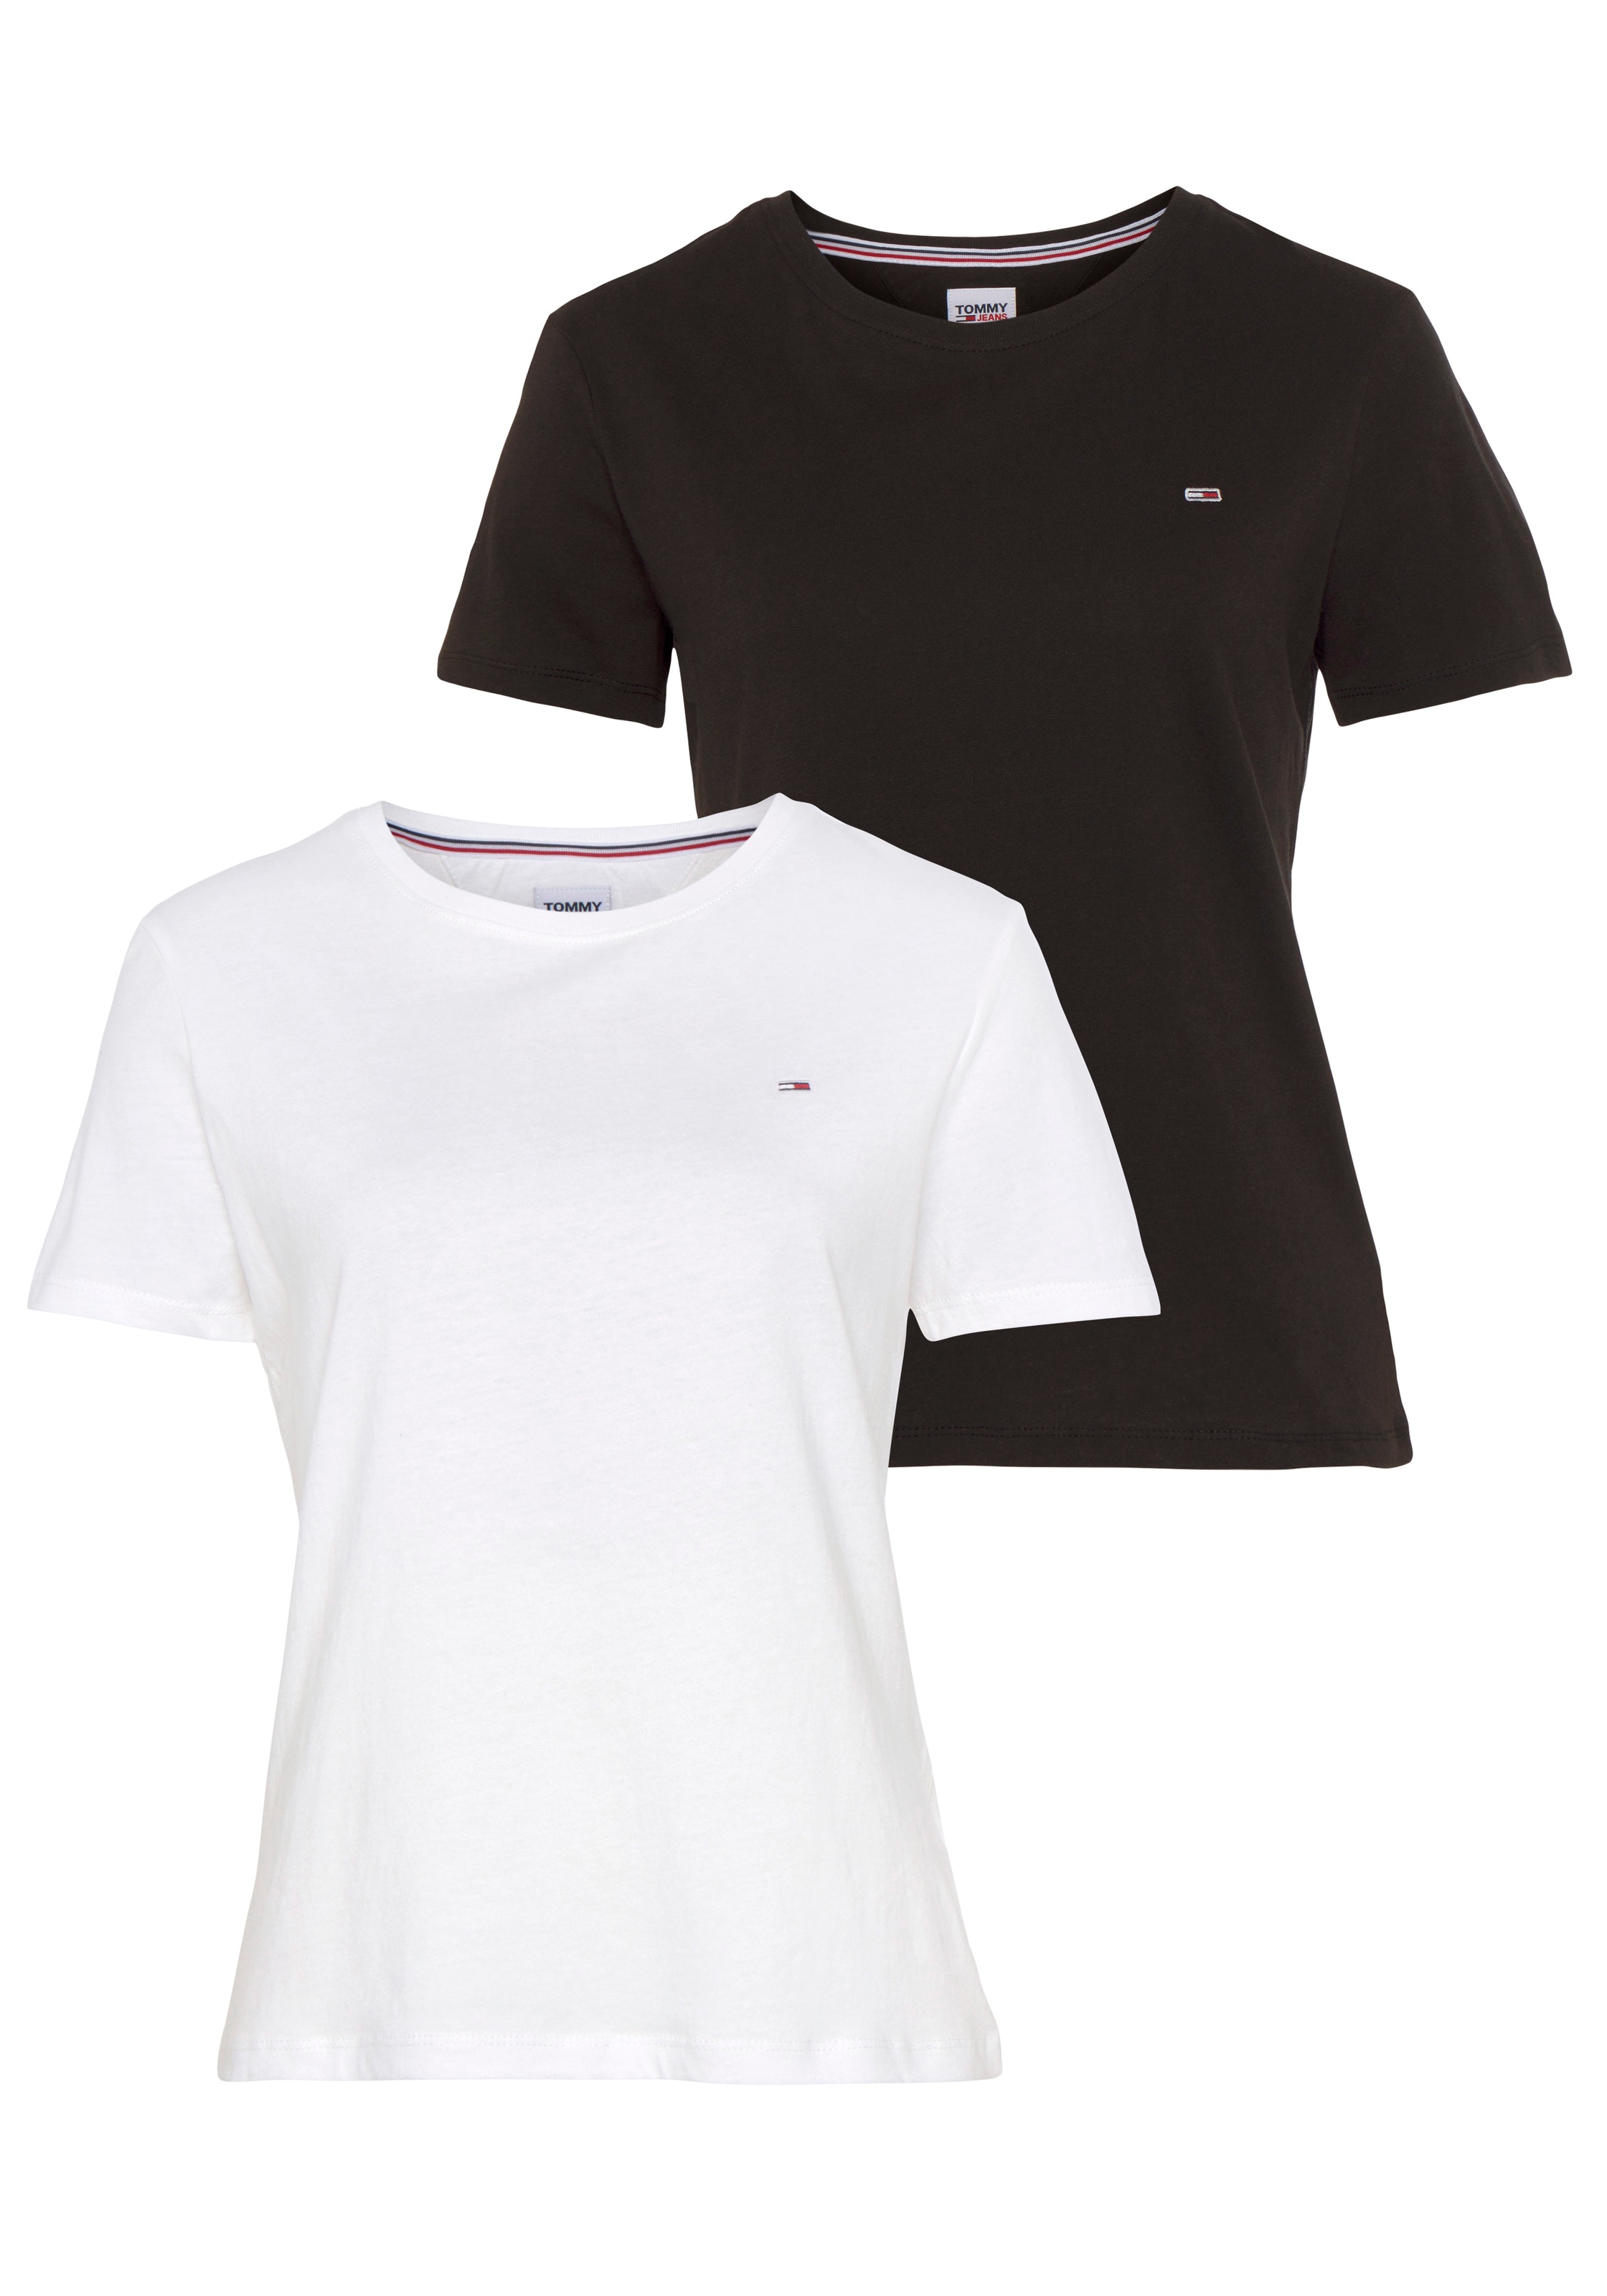 Schwarz-Weiße T-Shirts Damen für BAUR online kaufen 